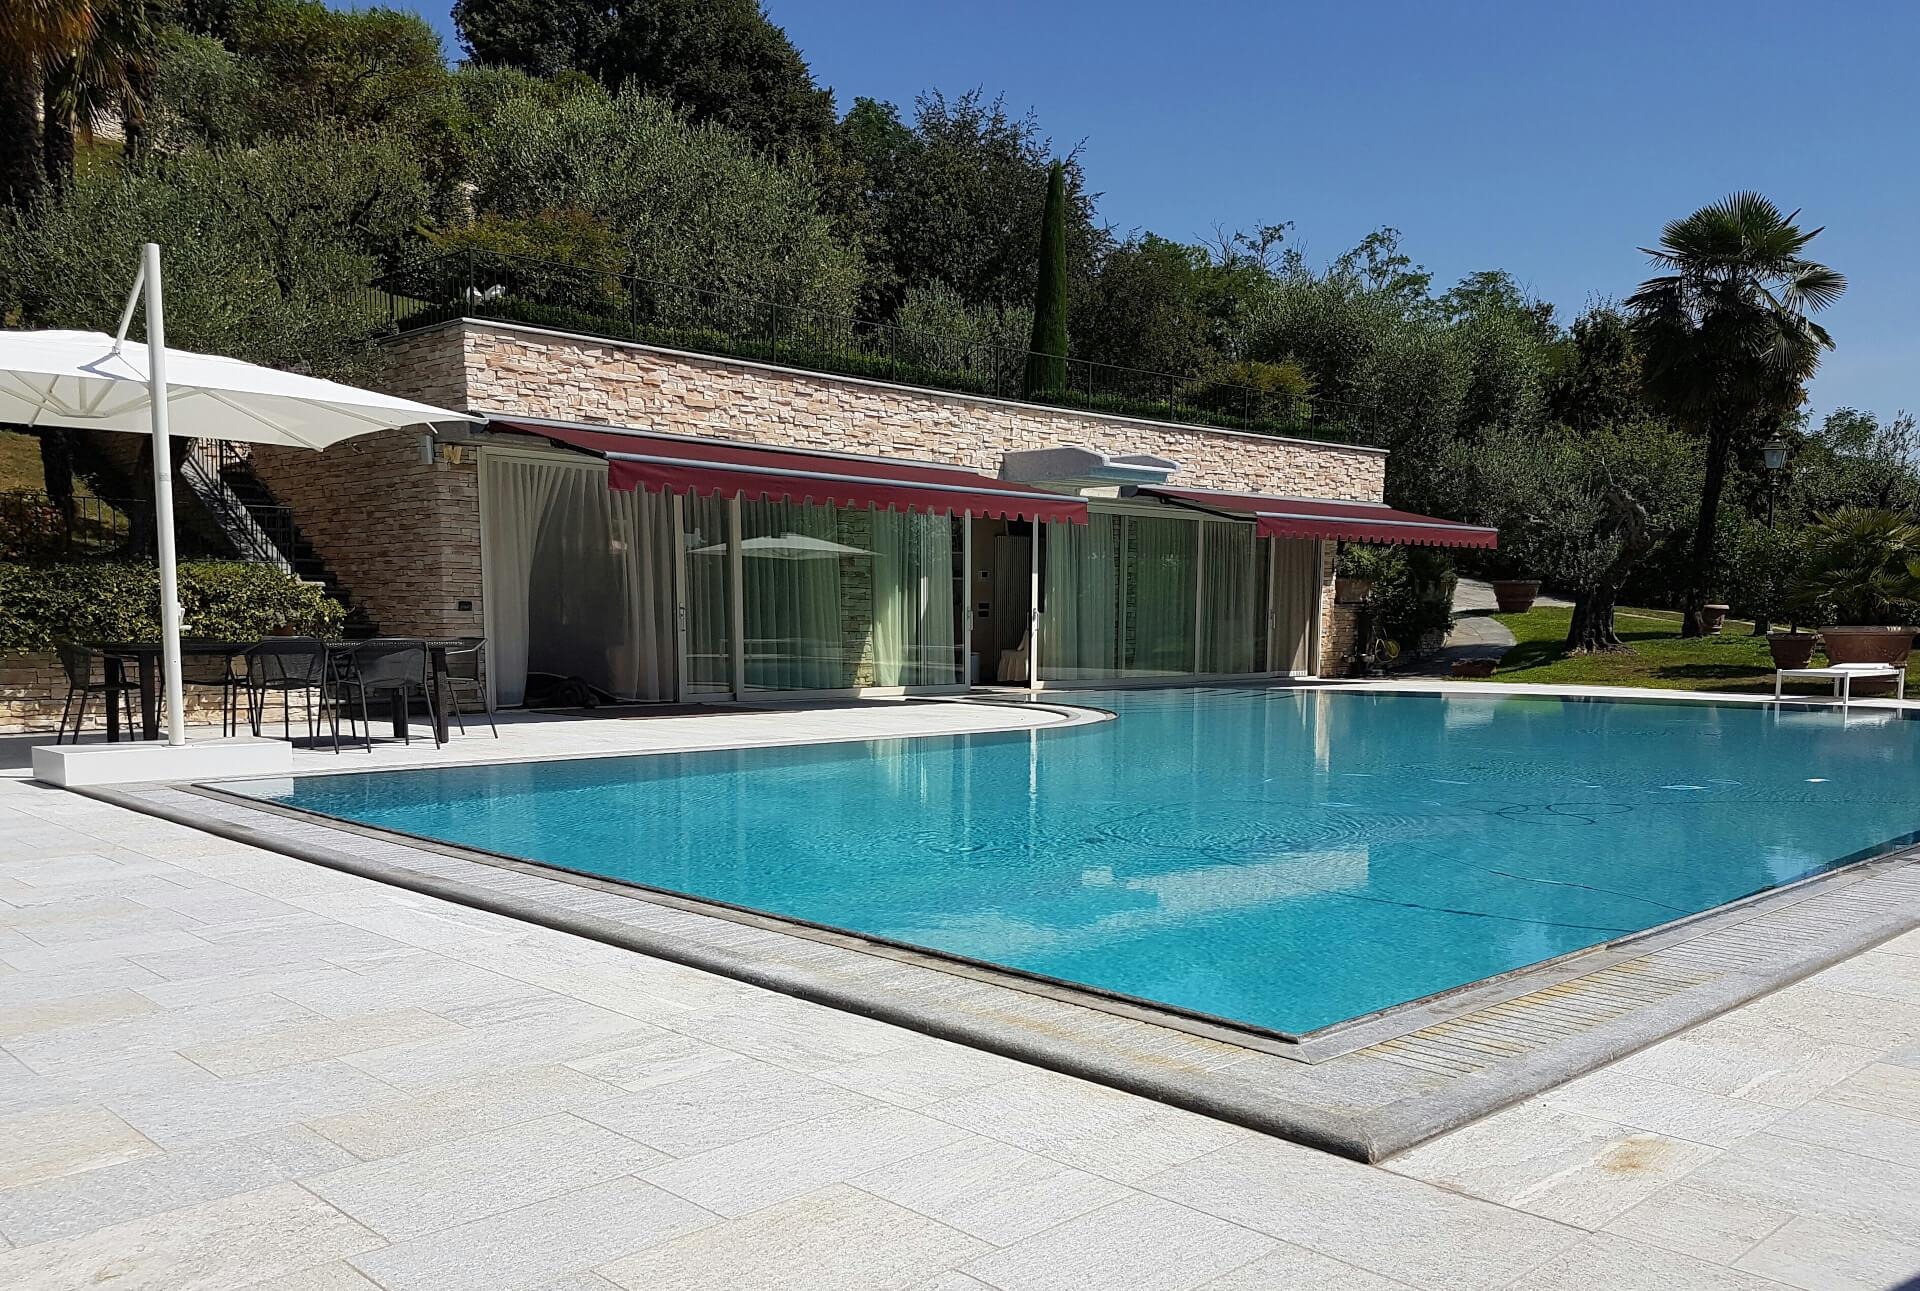 Ramella Graniti A - Restyling with grate Sfioro for a private villa in Valdengo